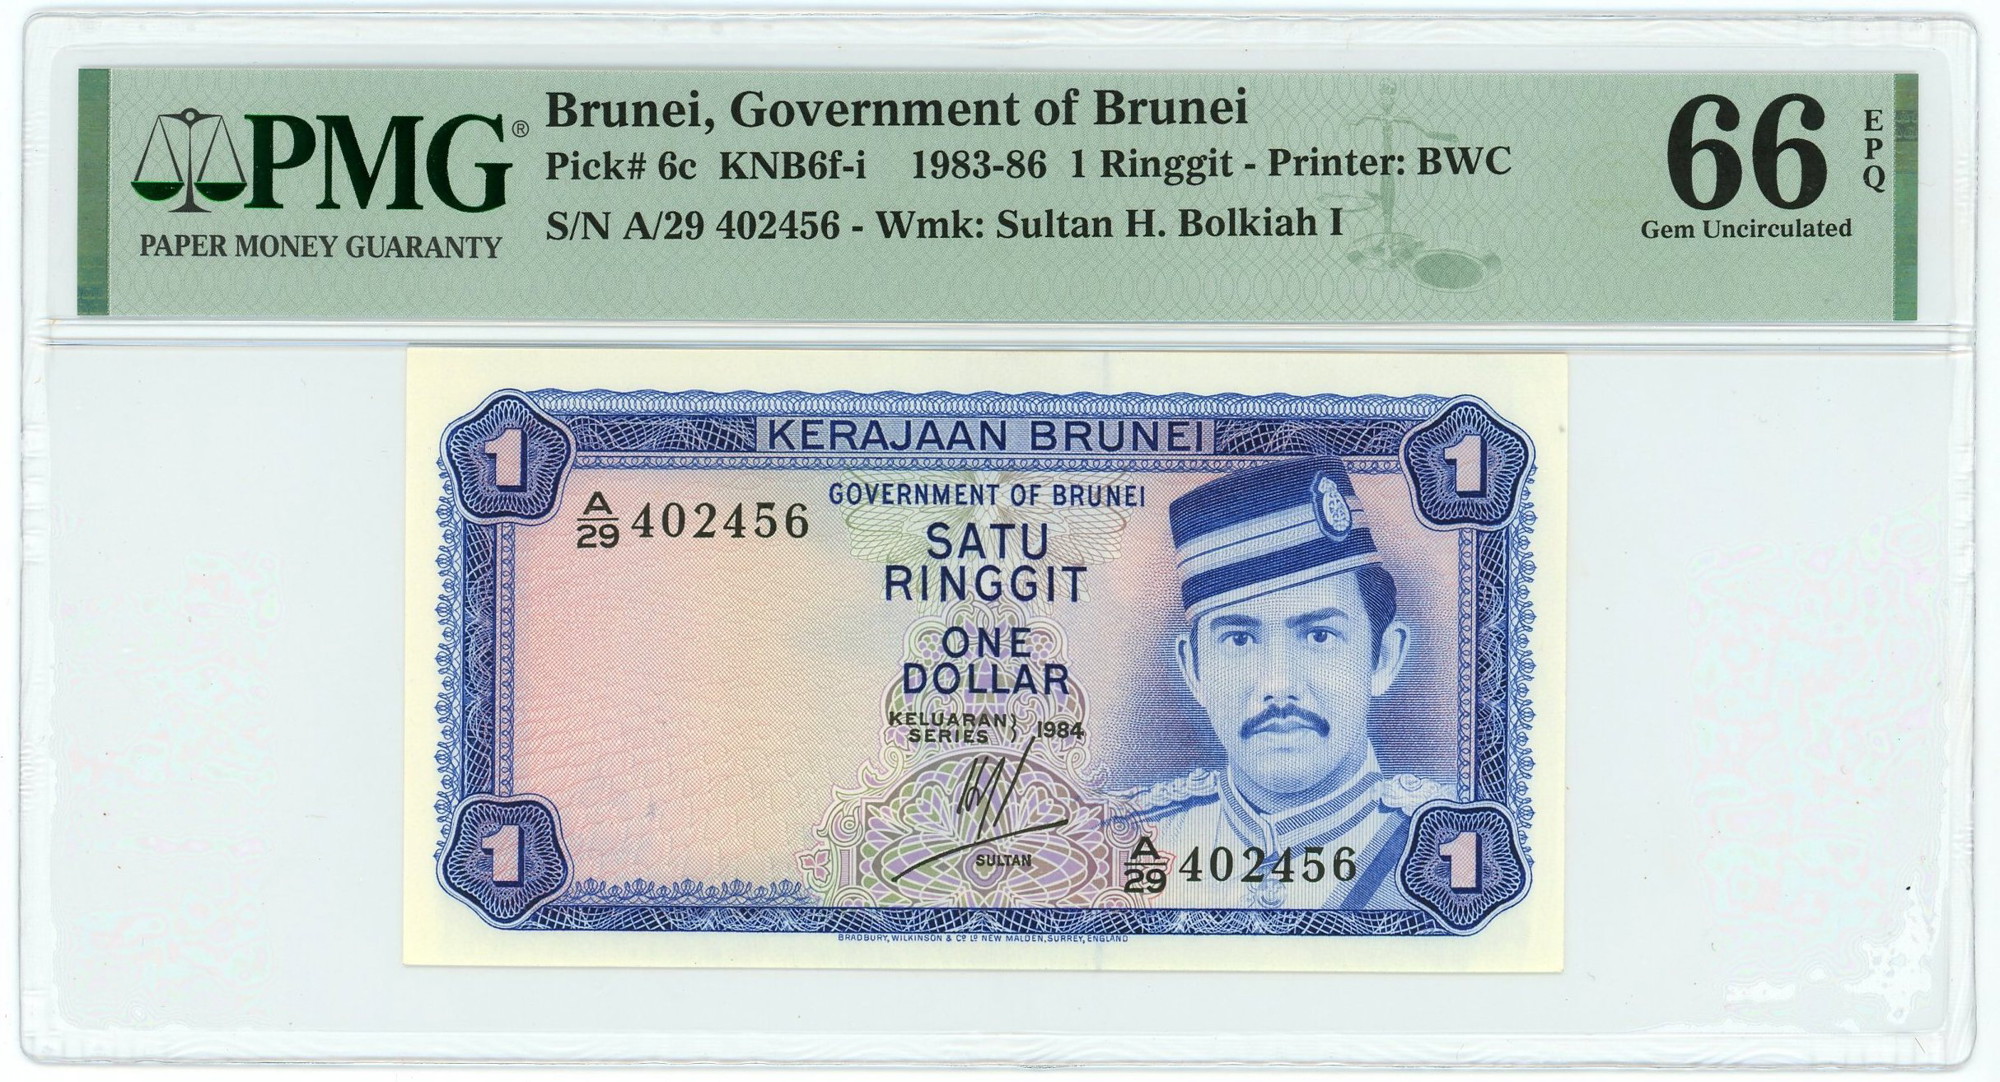 Brunei 1 Ringgit 1983 - 1986 PMG 66 EPQ Gem UNC | Katz Auction